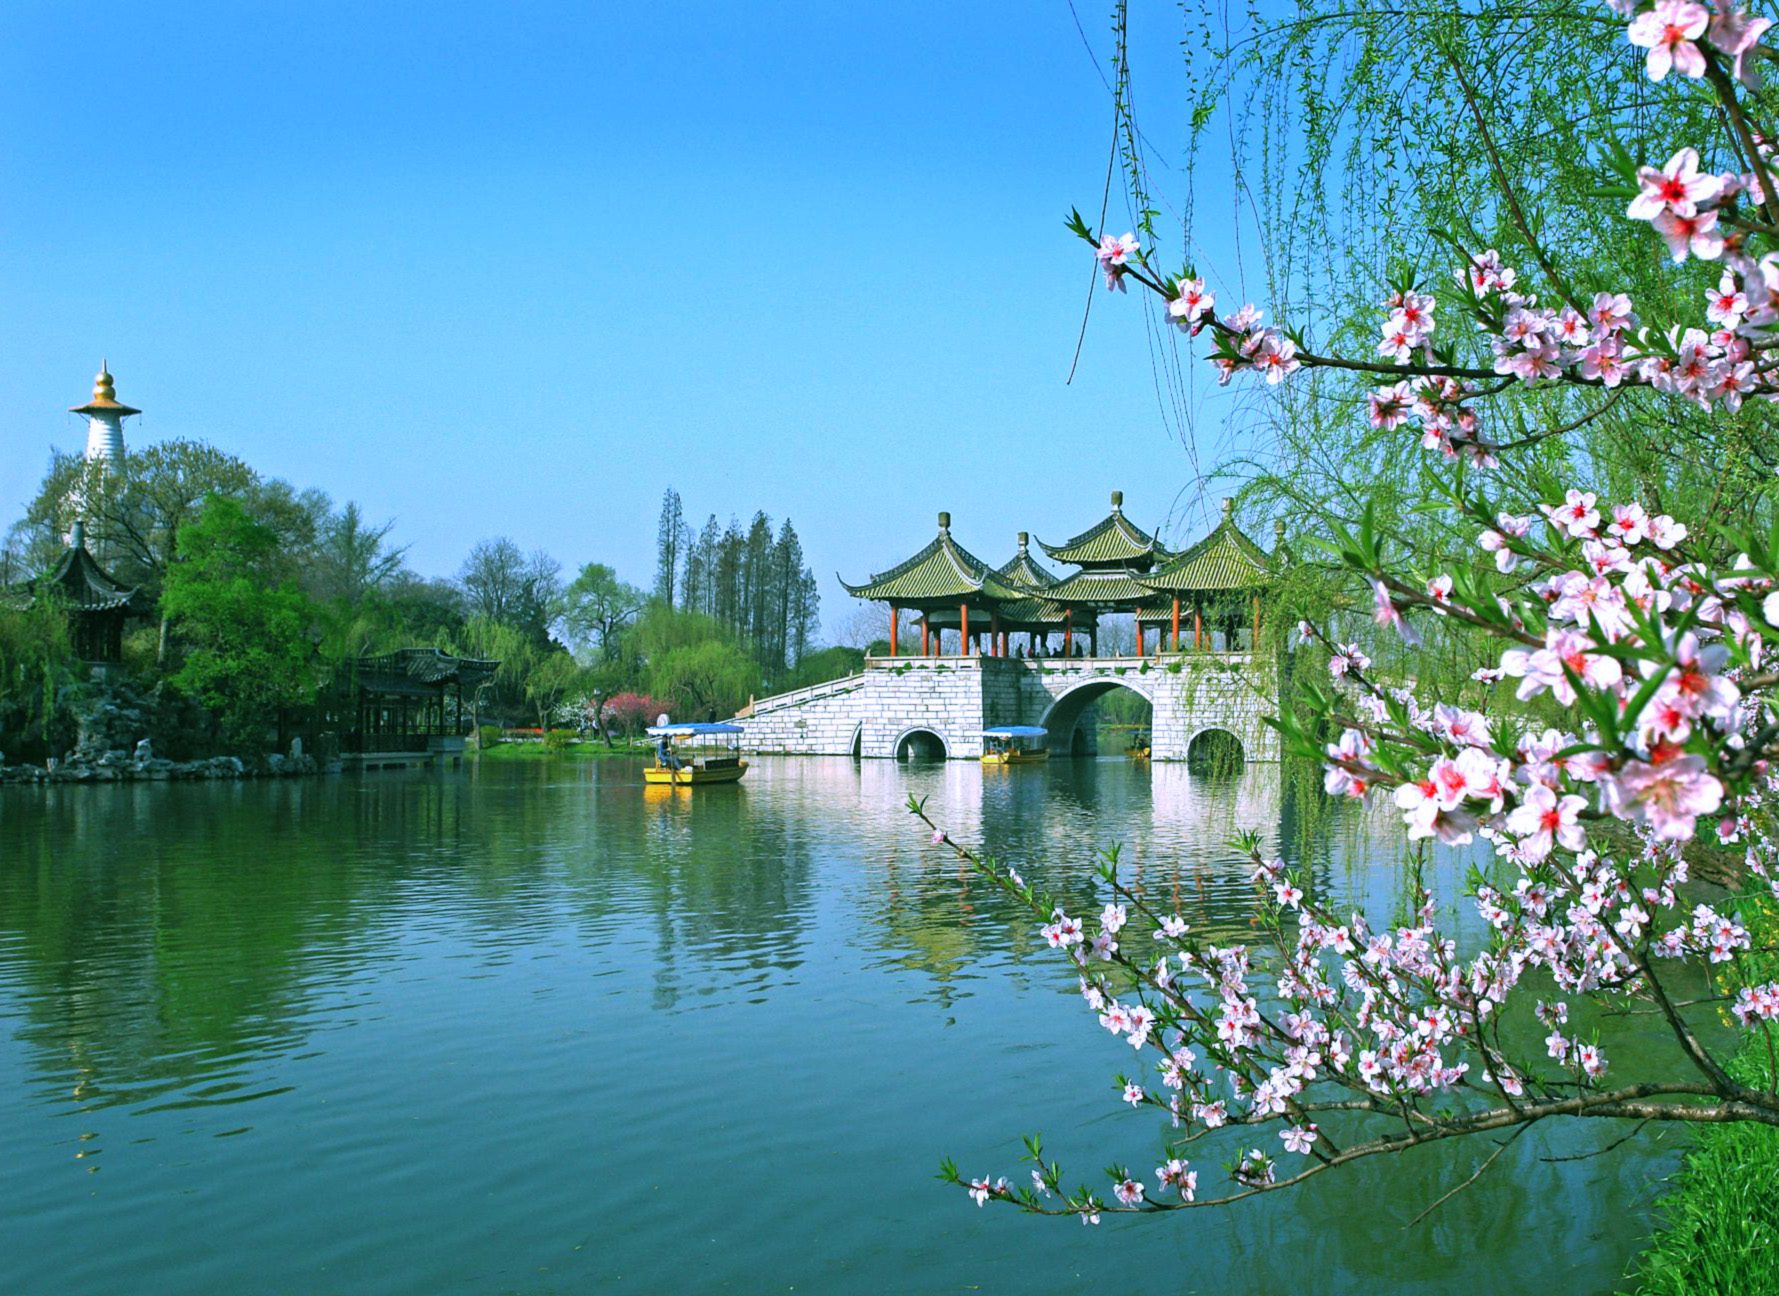 “核心价值观百场讲坛”第147场在扬州举办 宣讲中国历史上的廉洁文化